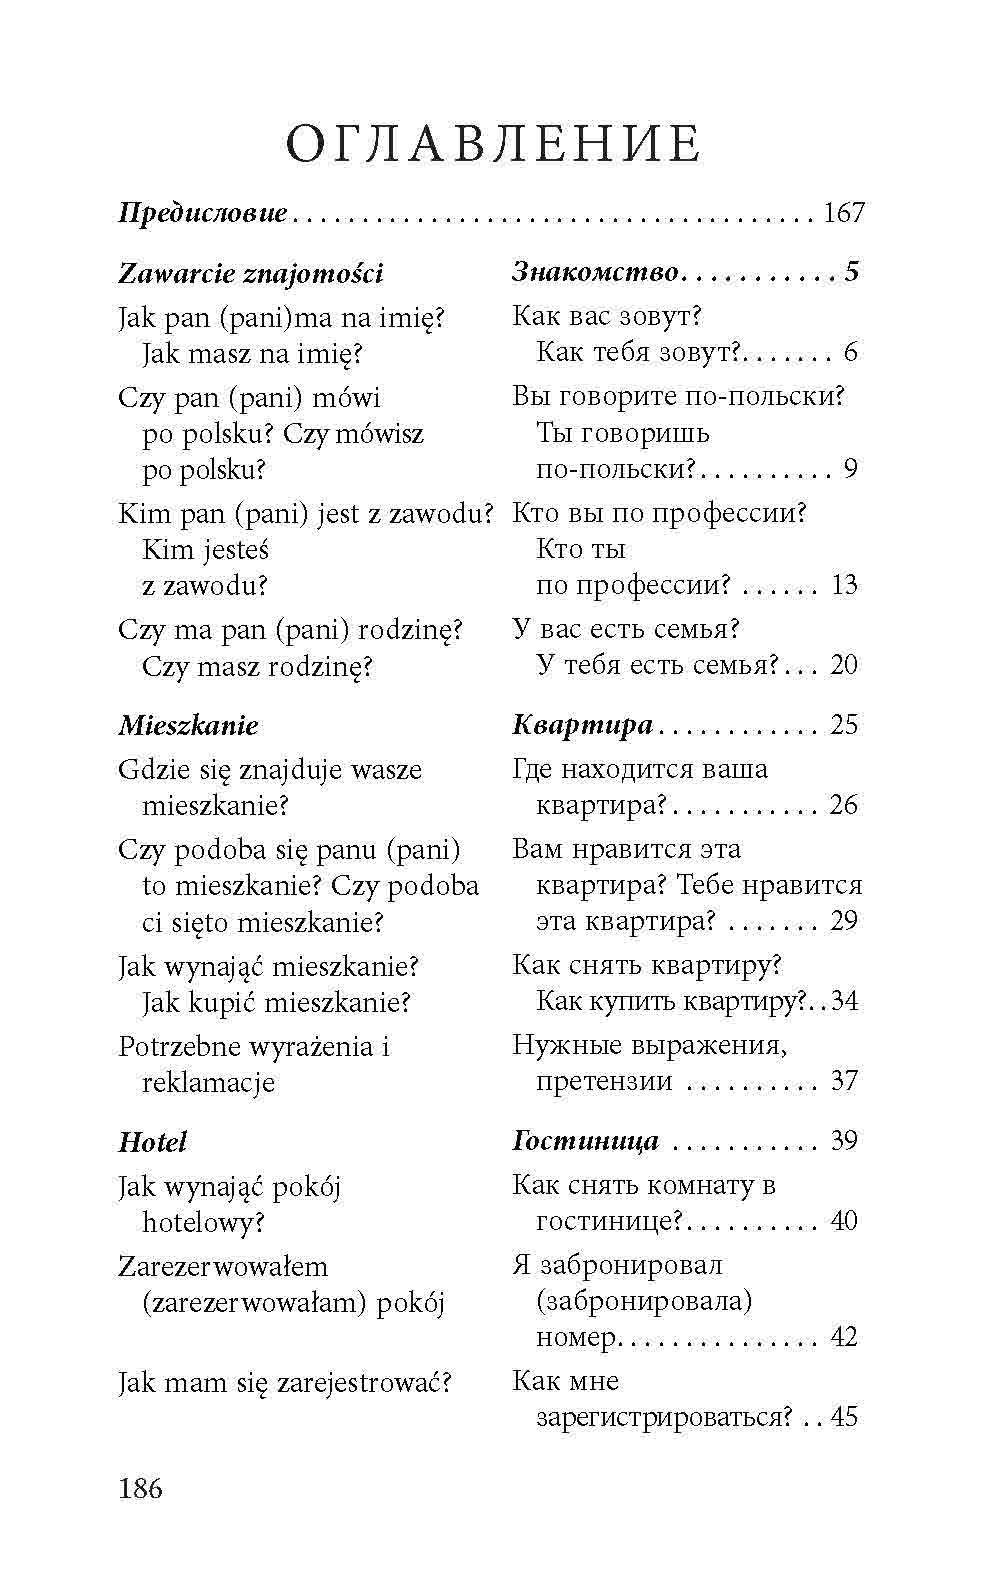 Знакомство польский язык диалог